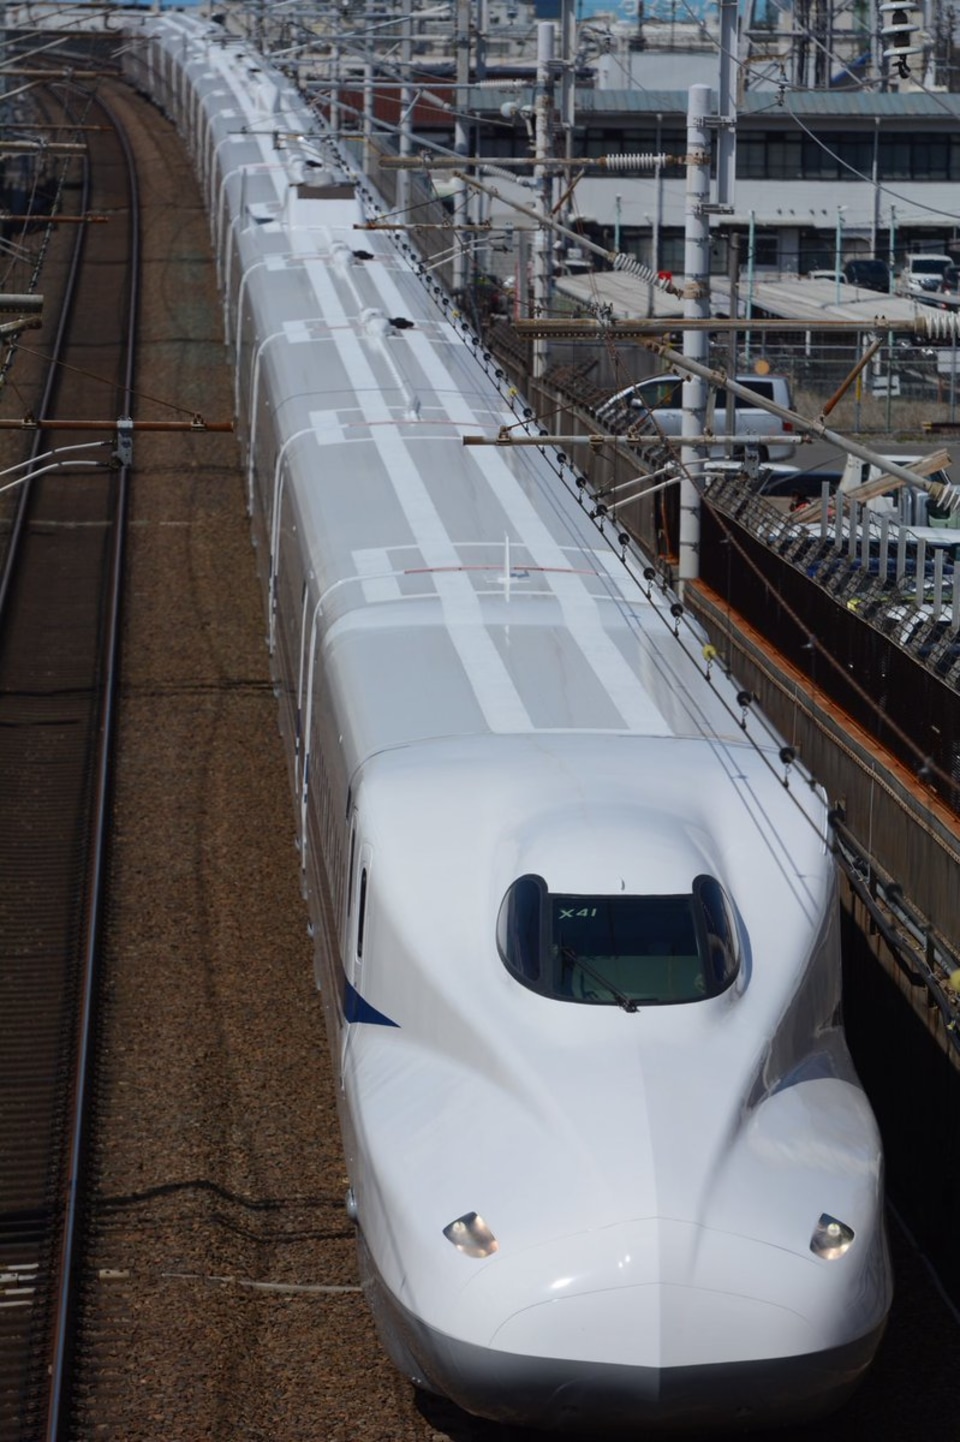 【JR海】N700系 X41編成浜松工場出場試運転の拡大写真